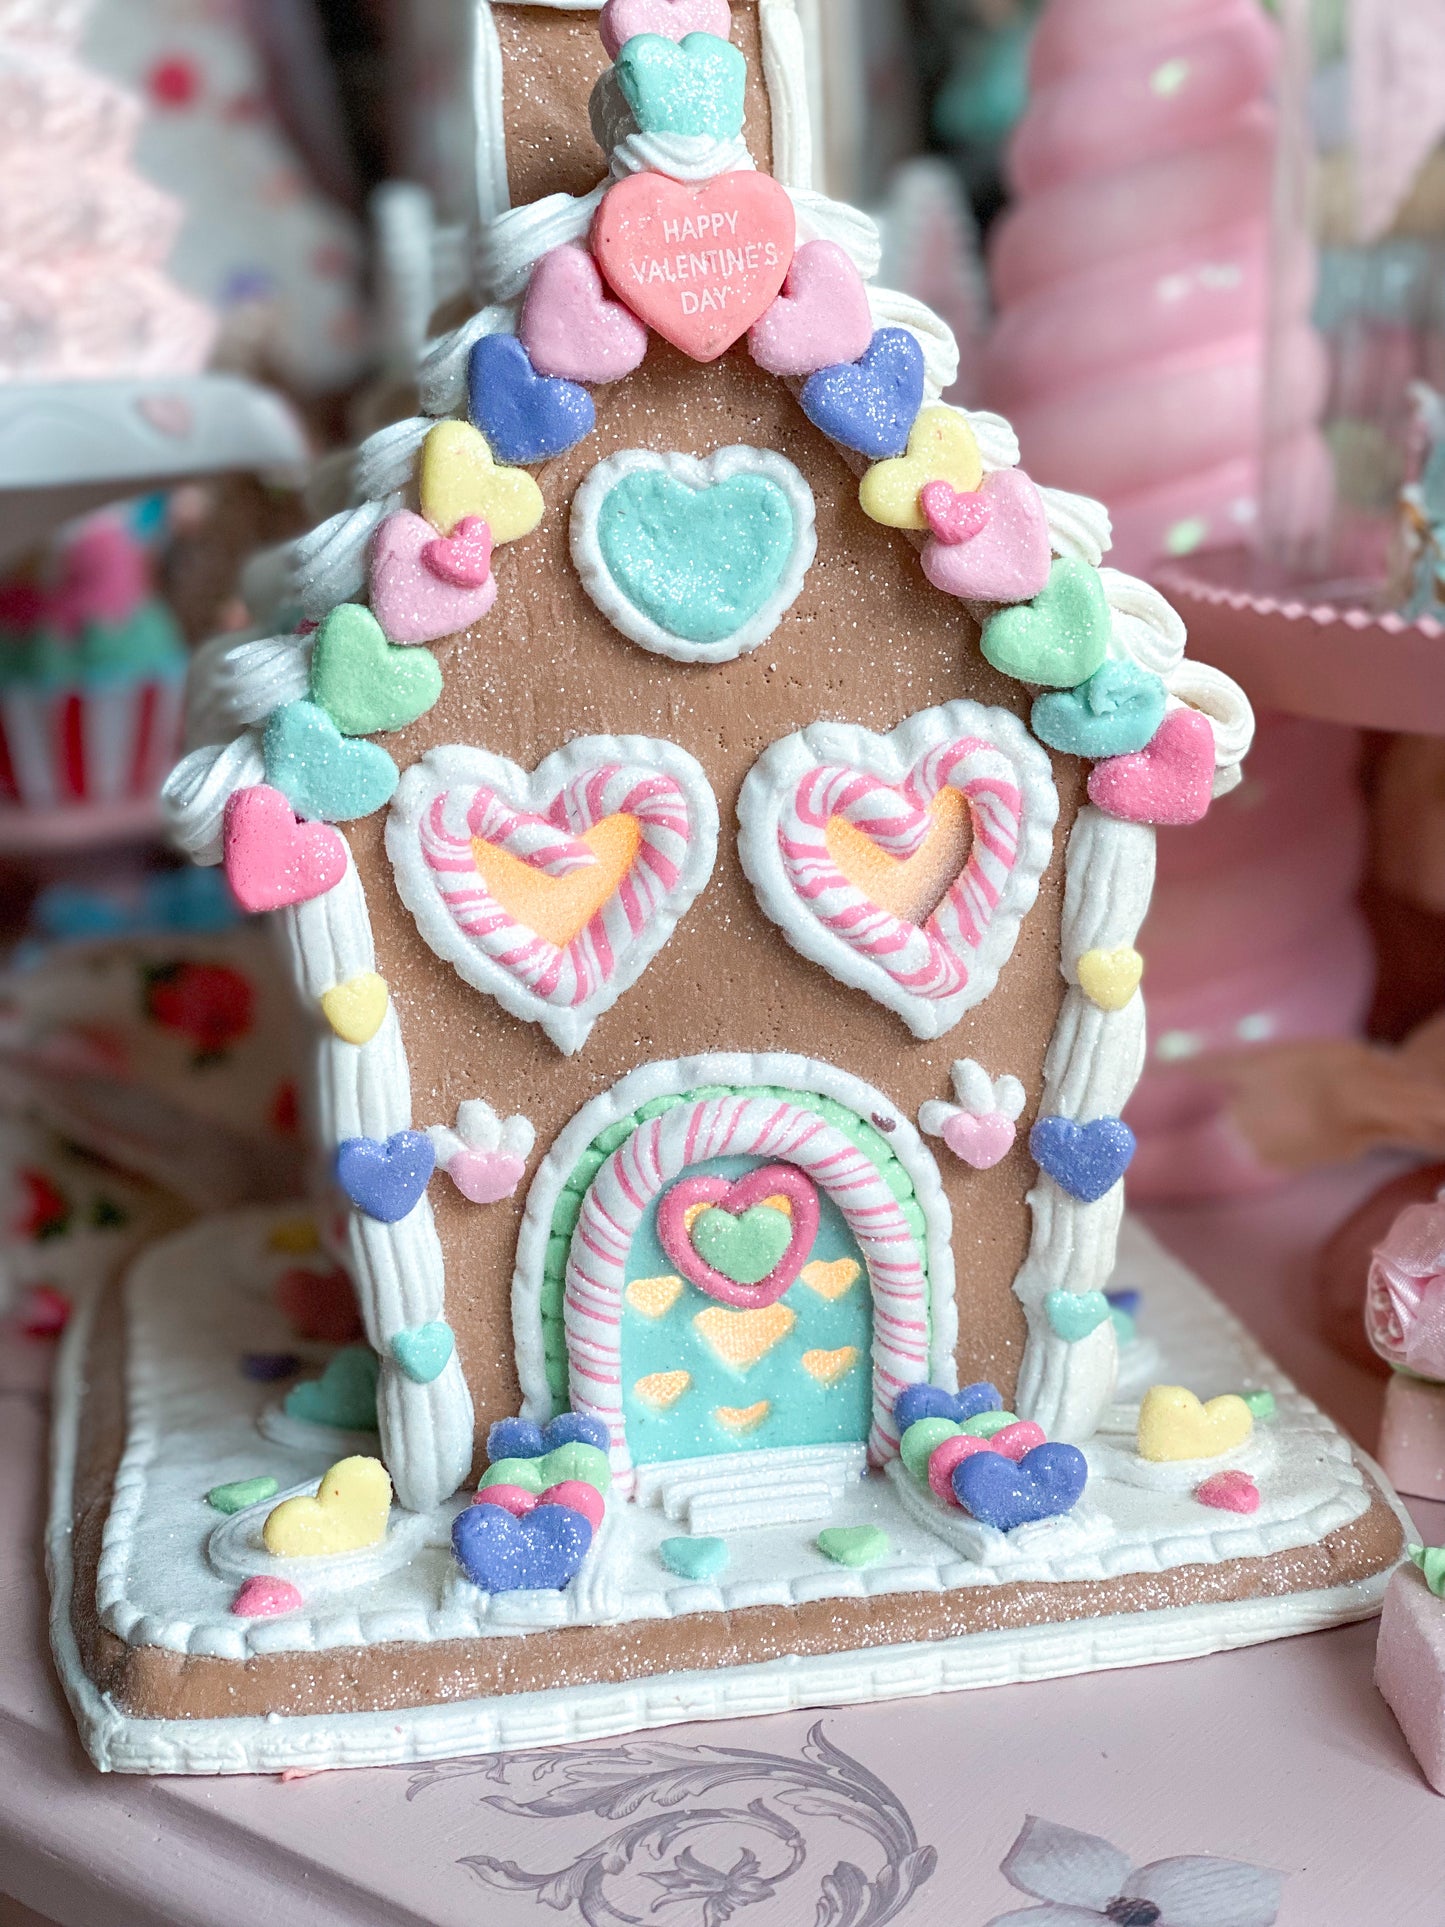 Casa de pan de jengibre iluminada en colores pastel del día de San Valentín